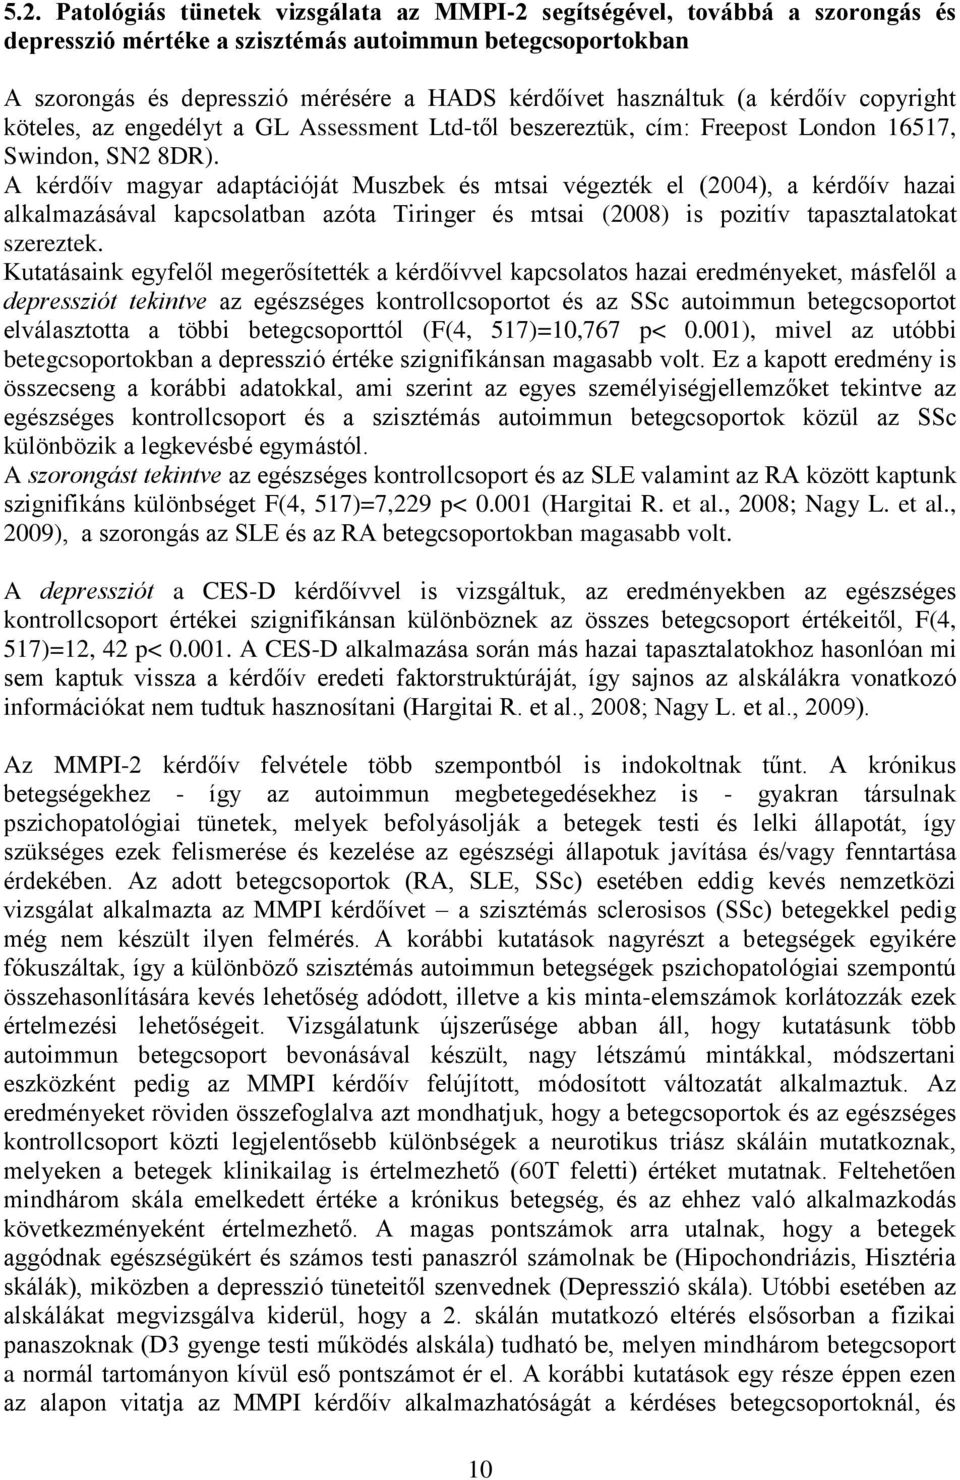 A kérdőív magyar adaptációját Muszbek és mtsai végezték el (2004), a kérdőív hazai alkalmazásával kapcsolatban azóta Tiringer és mtsai (2008) is pozitív tapasztalatokat szereztek.